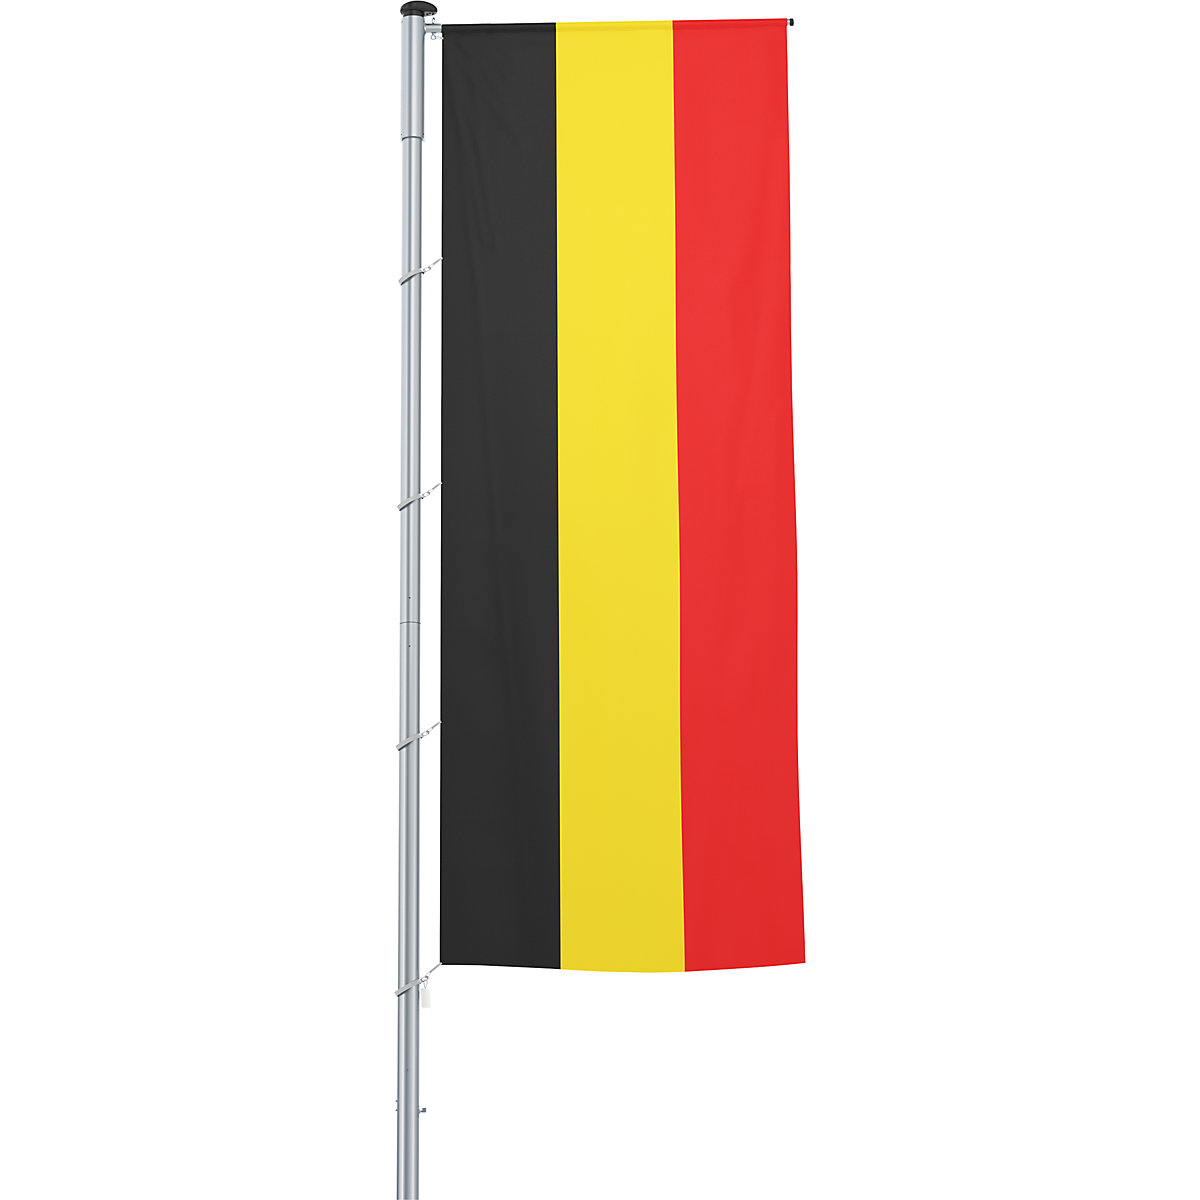 Mannus – Bandera con pluma/bandera del país, formato 1,2 x 3 m, Bélgica